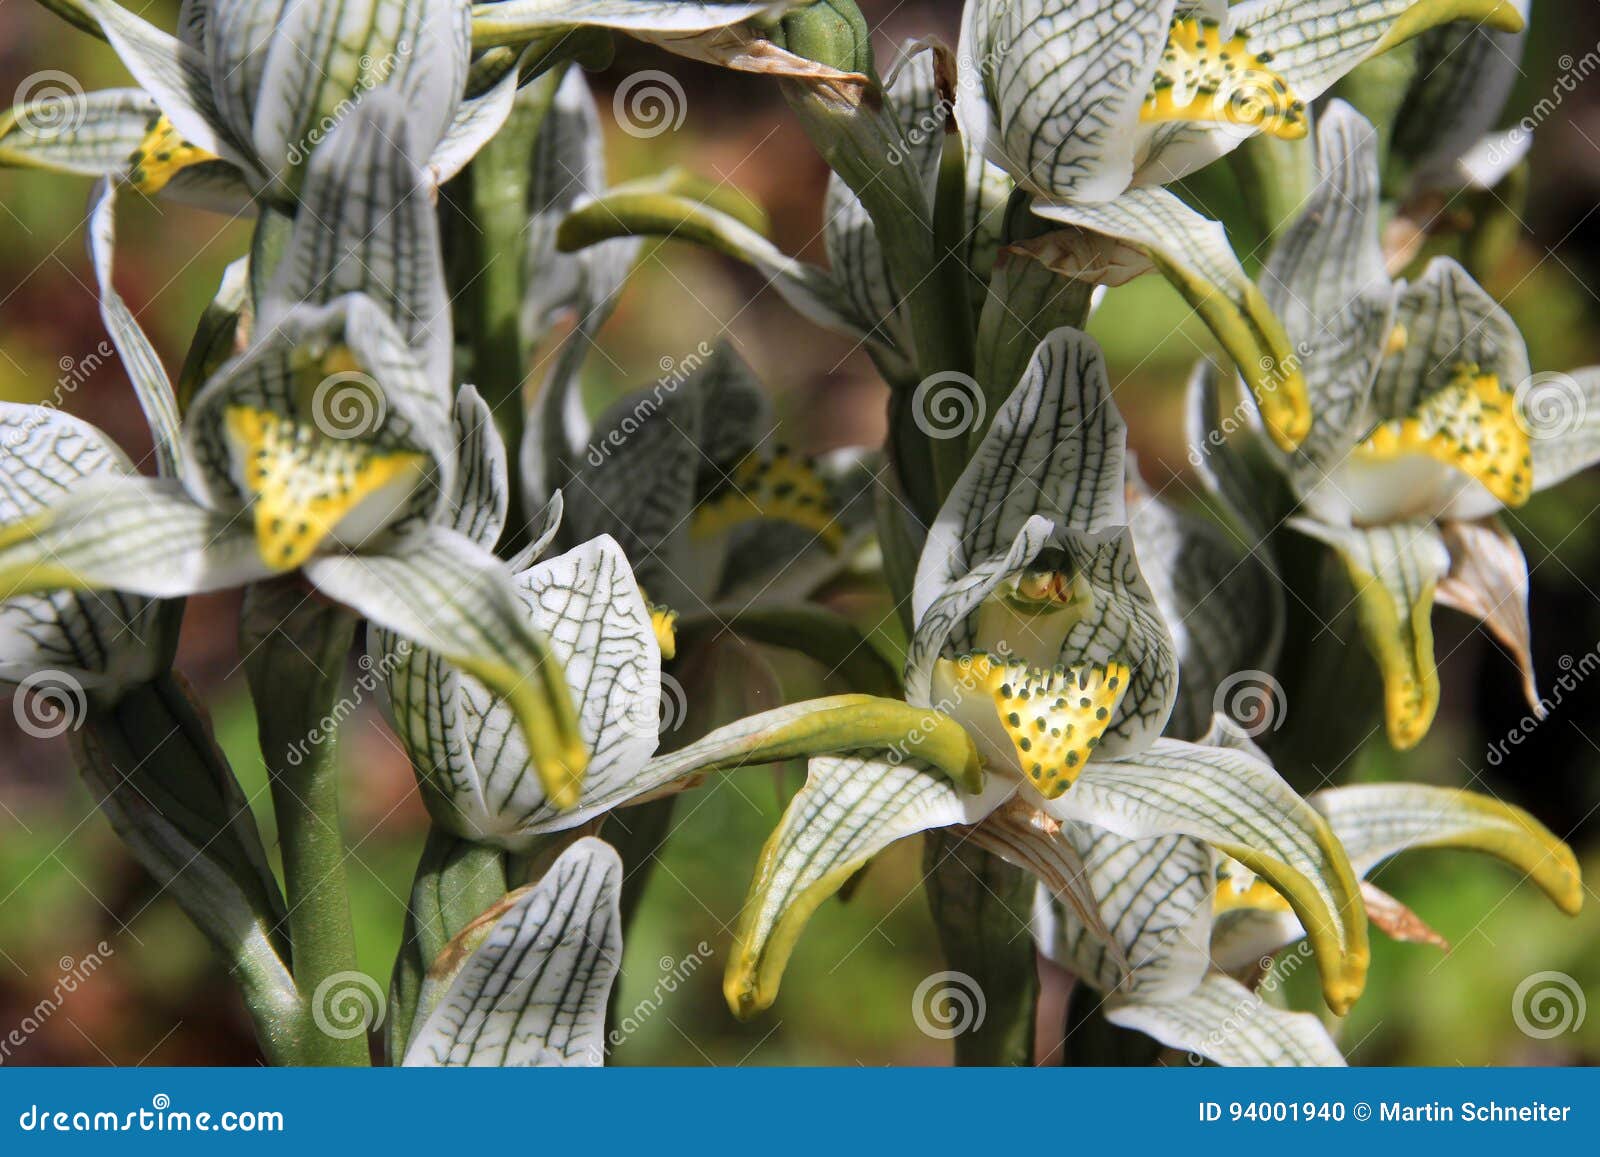 que  suis  - je  categorie  flore  - ajonc  29/12 bravo  Martine   Porcelaine-ou-orchid%C3%A9e-de-mosa%C3%AFque-magellanica-de-chloraea-chili-94001940